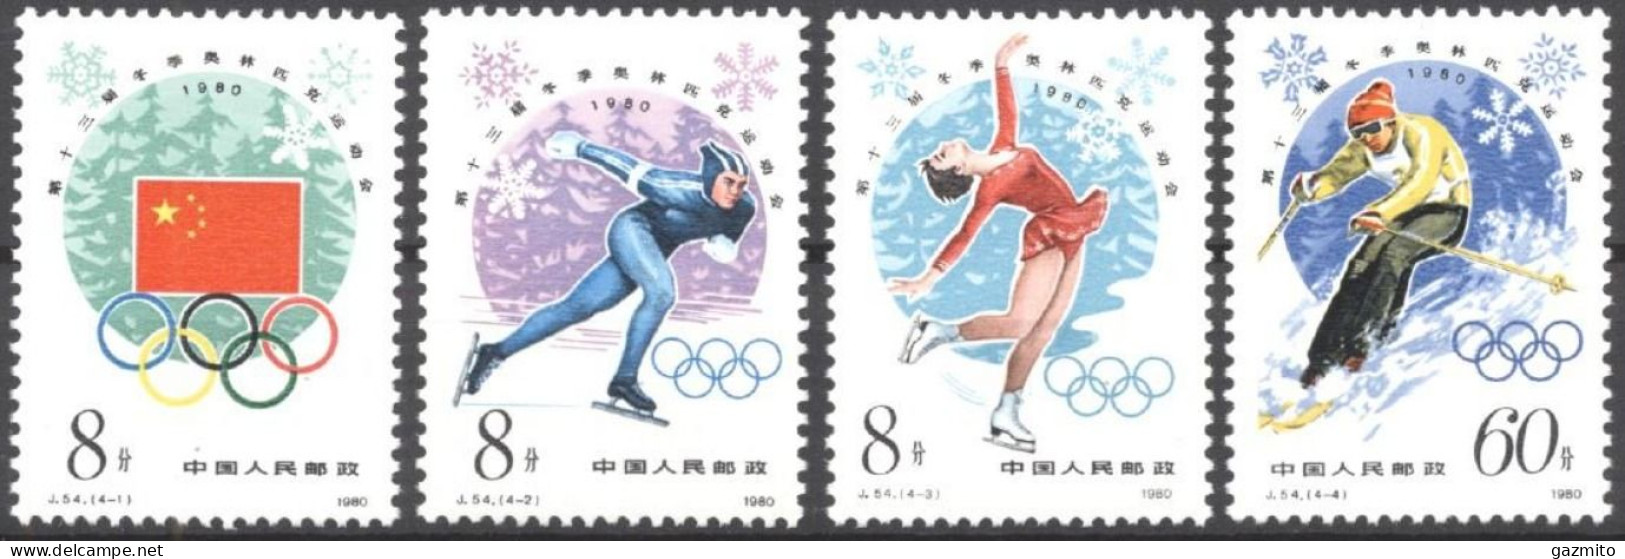 China 1980, Winter Olympic Games, Lake Placid, Skating, Skiing, 4val - Figure Skating